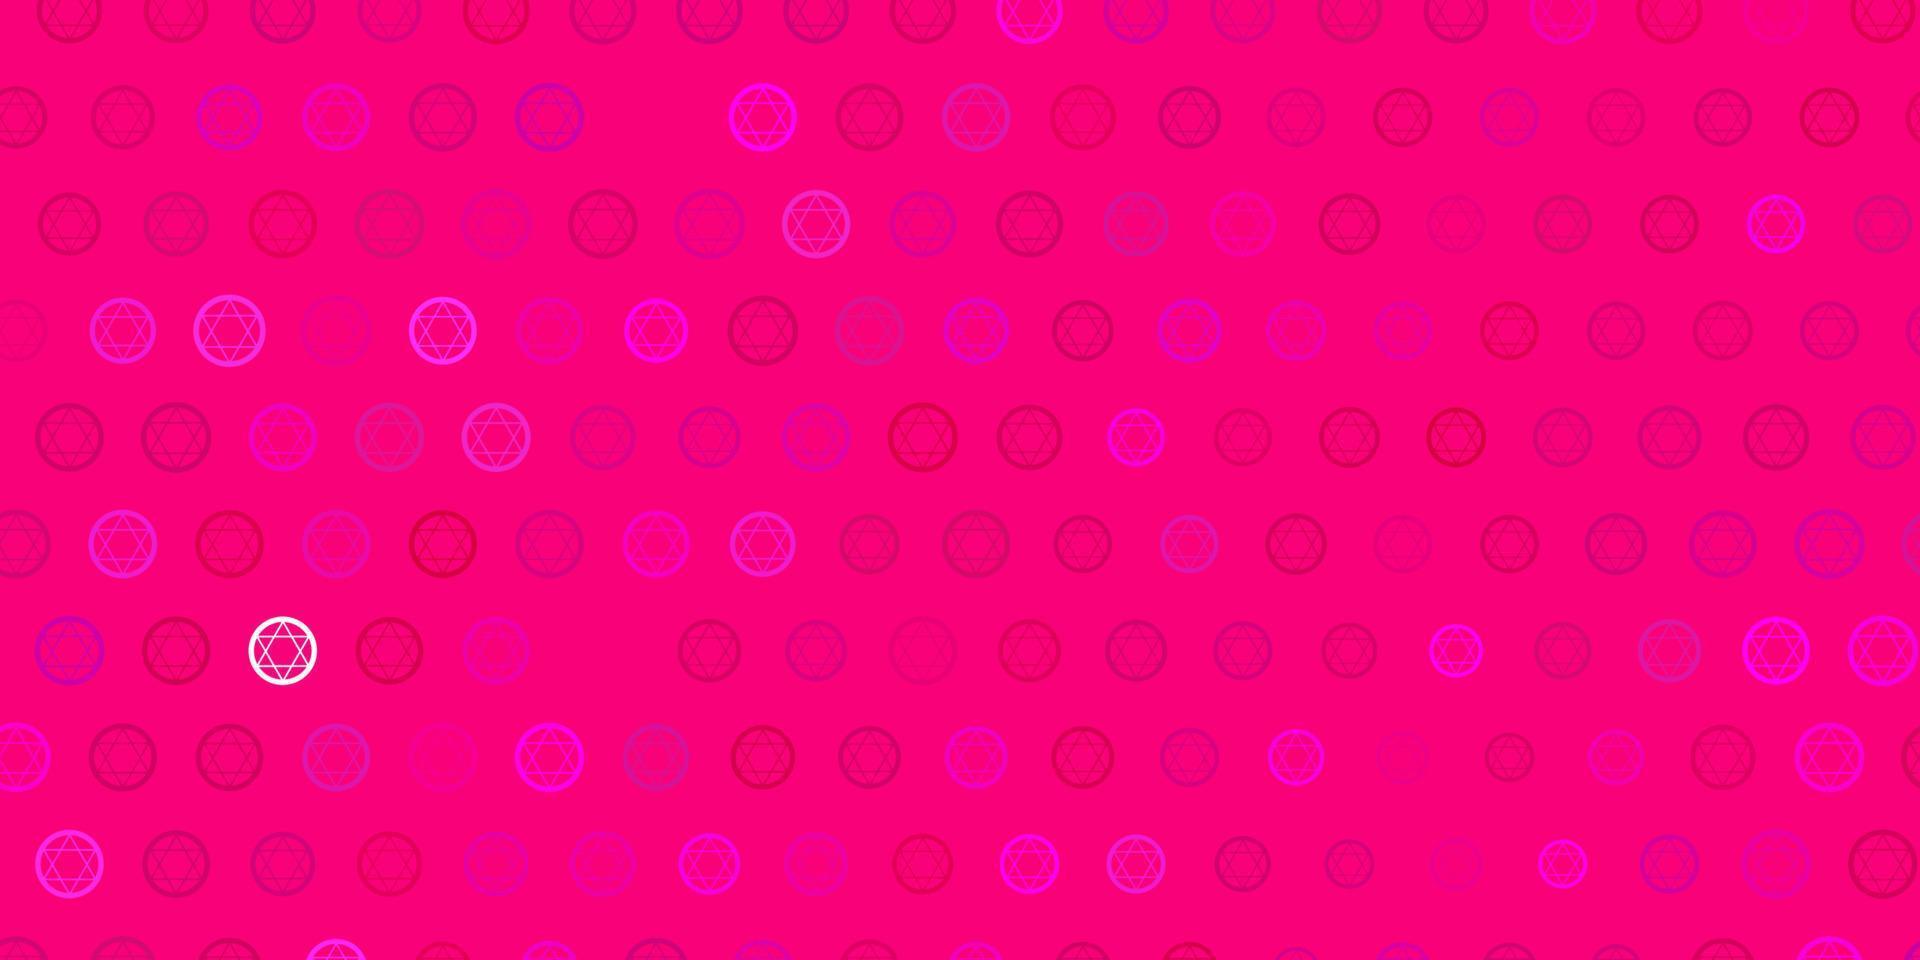 Fondo de vector rosa claro con símbolos ocultos.